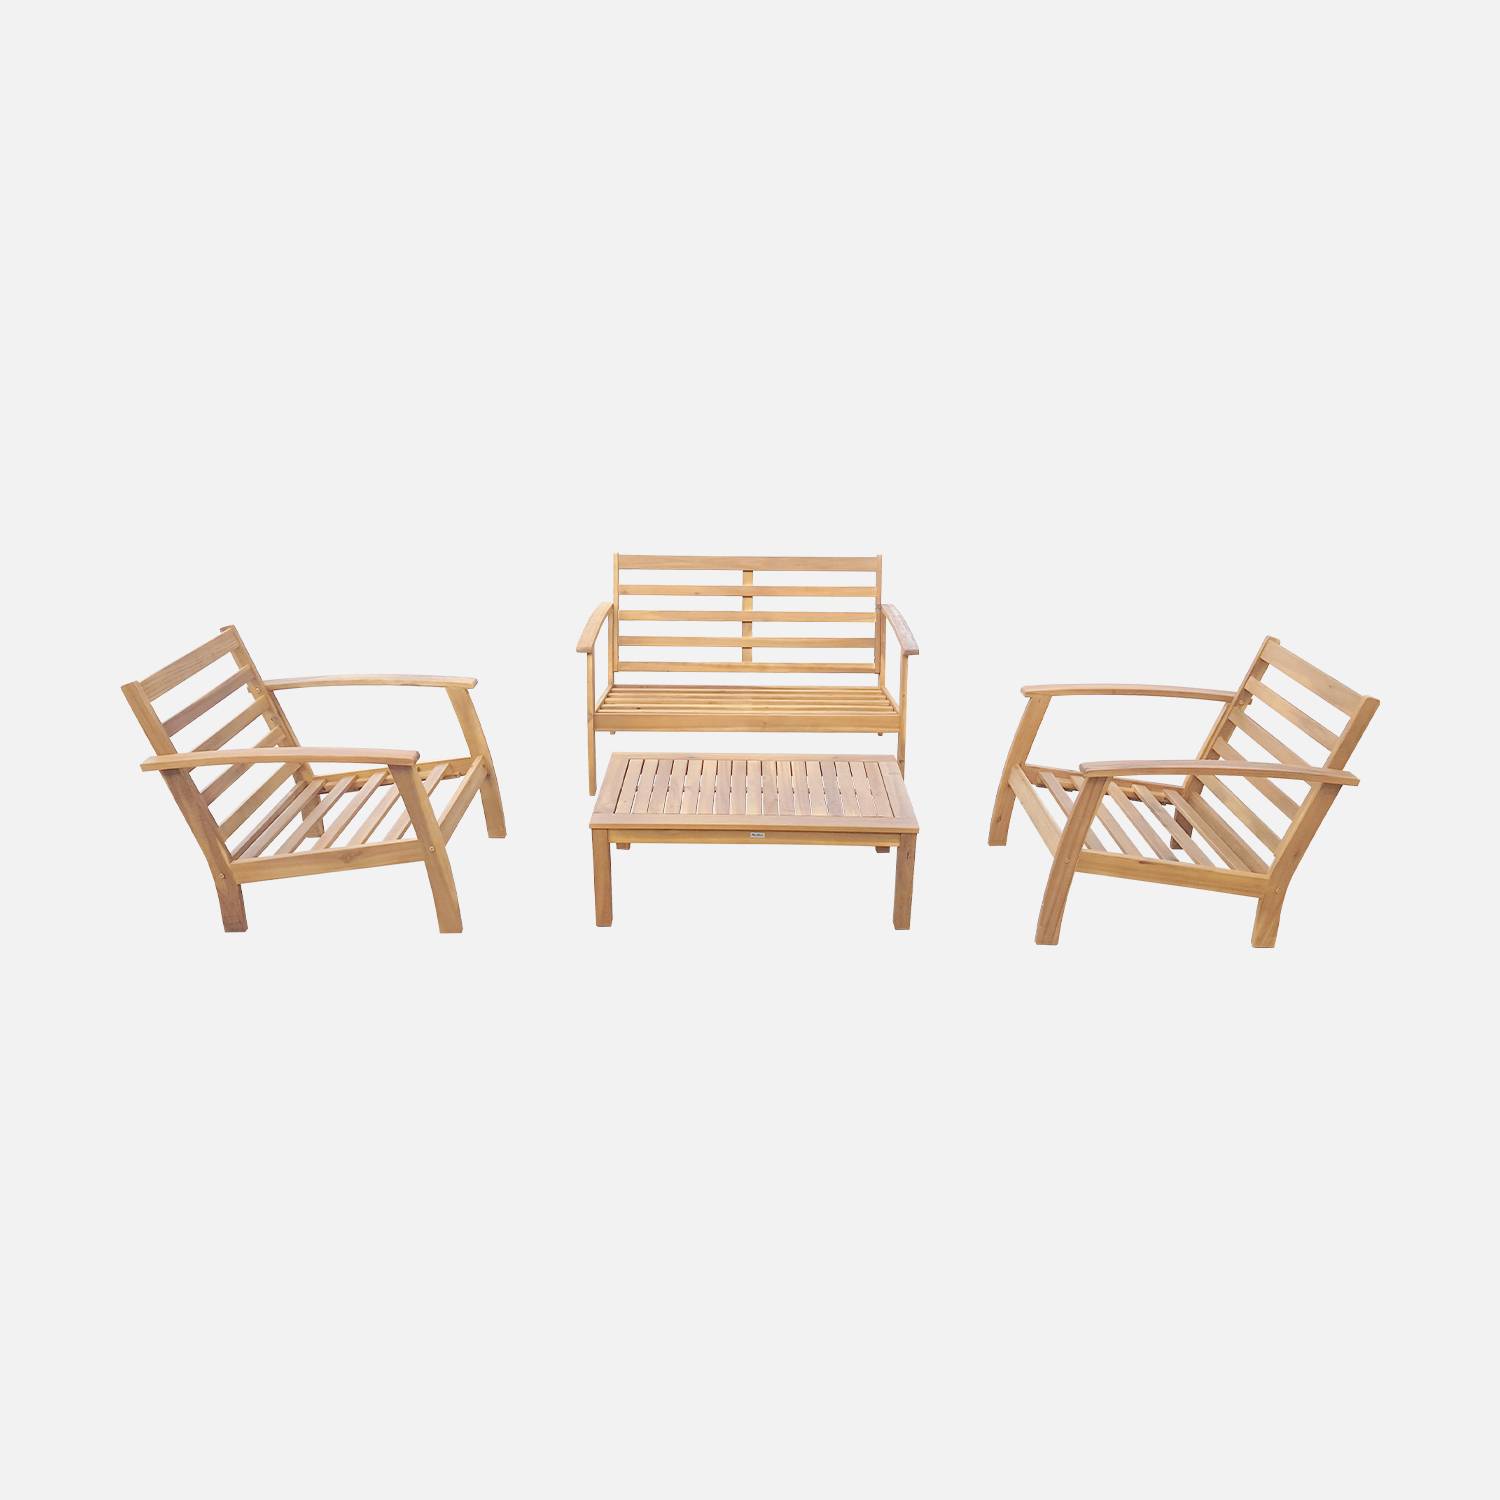 Móveis de madeira para jardim 4 lugares - Almofadas, sofás, poltronas e mesa de café em acácia, design - Ushuaïa Photo6